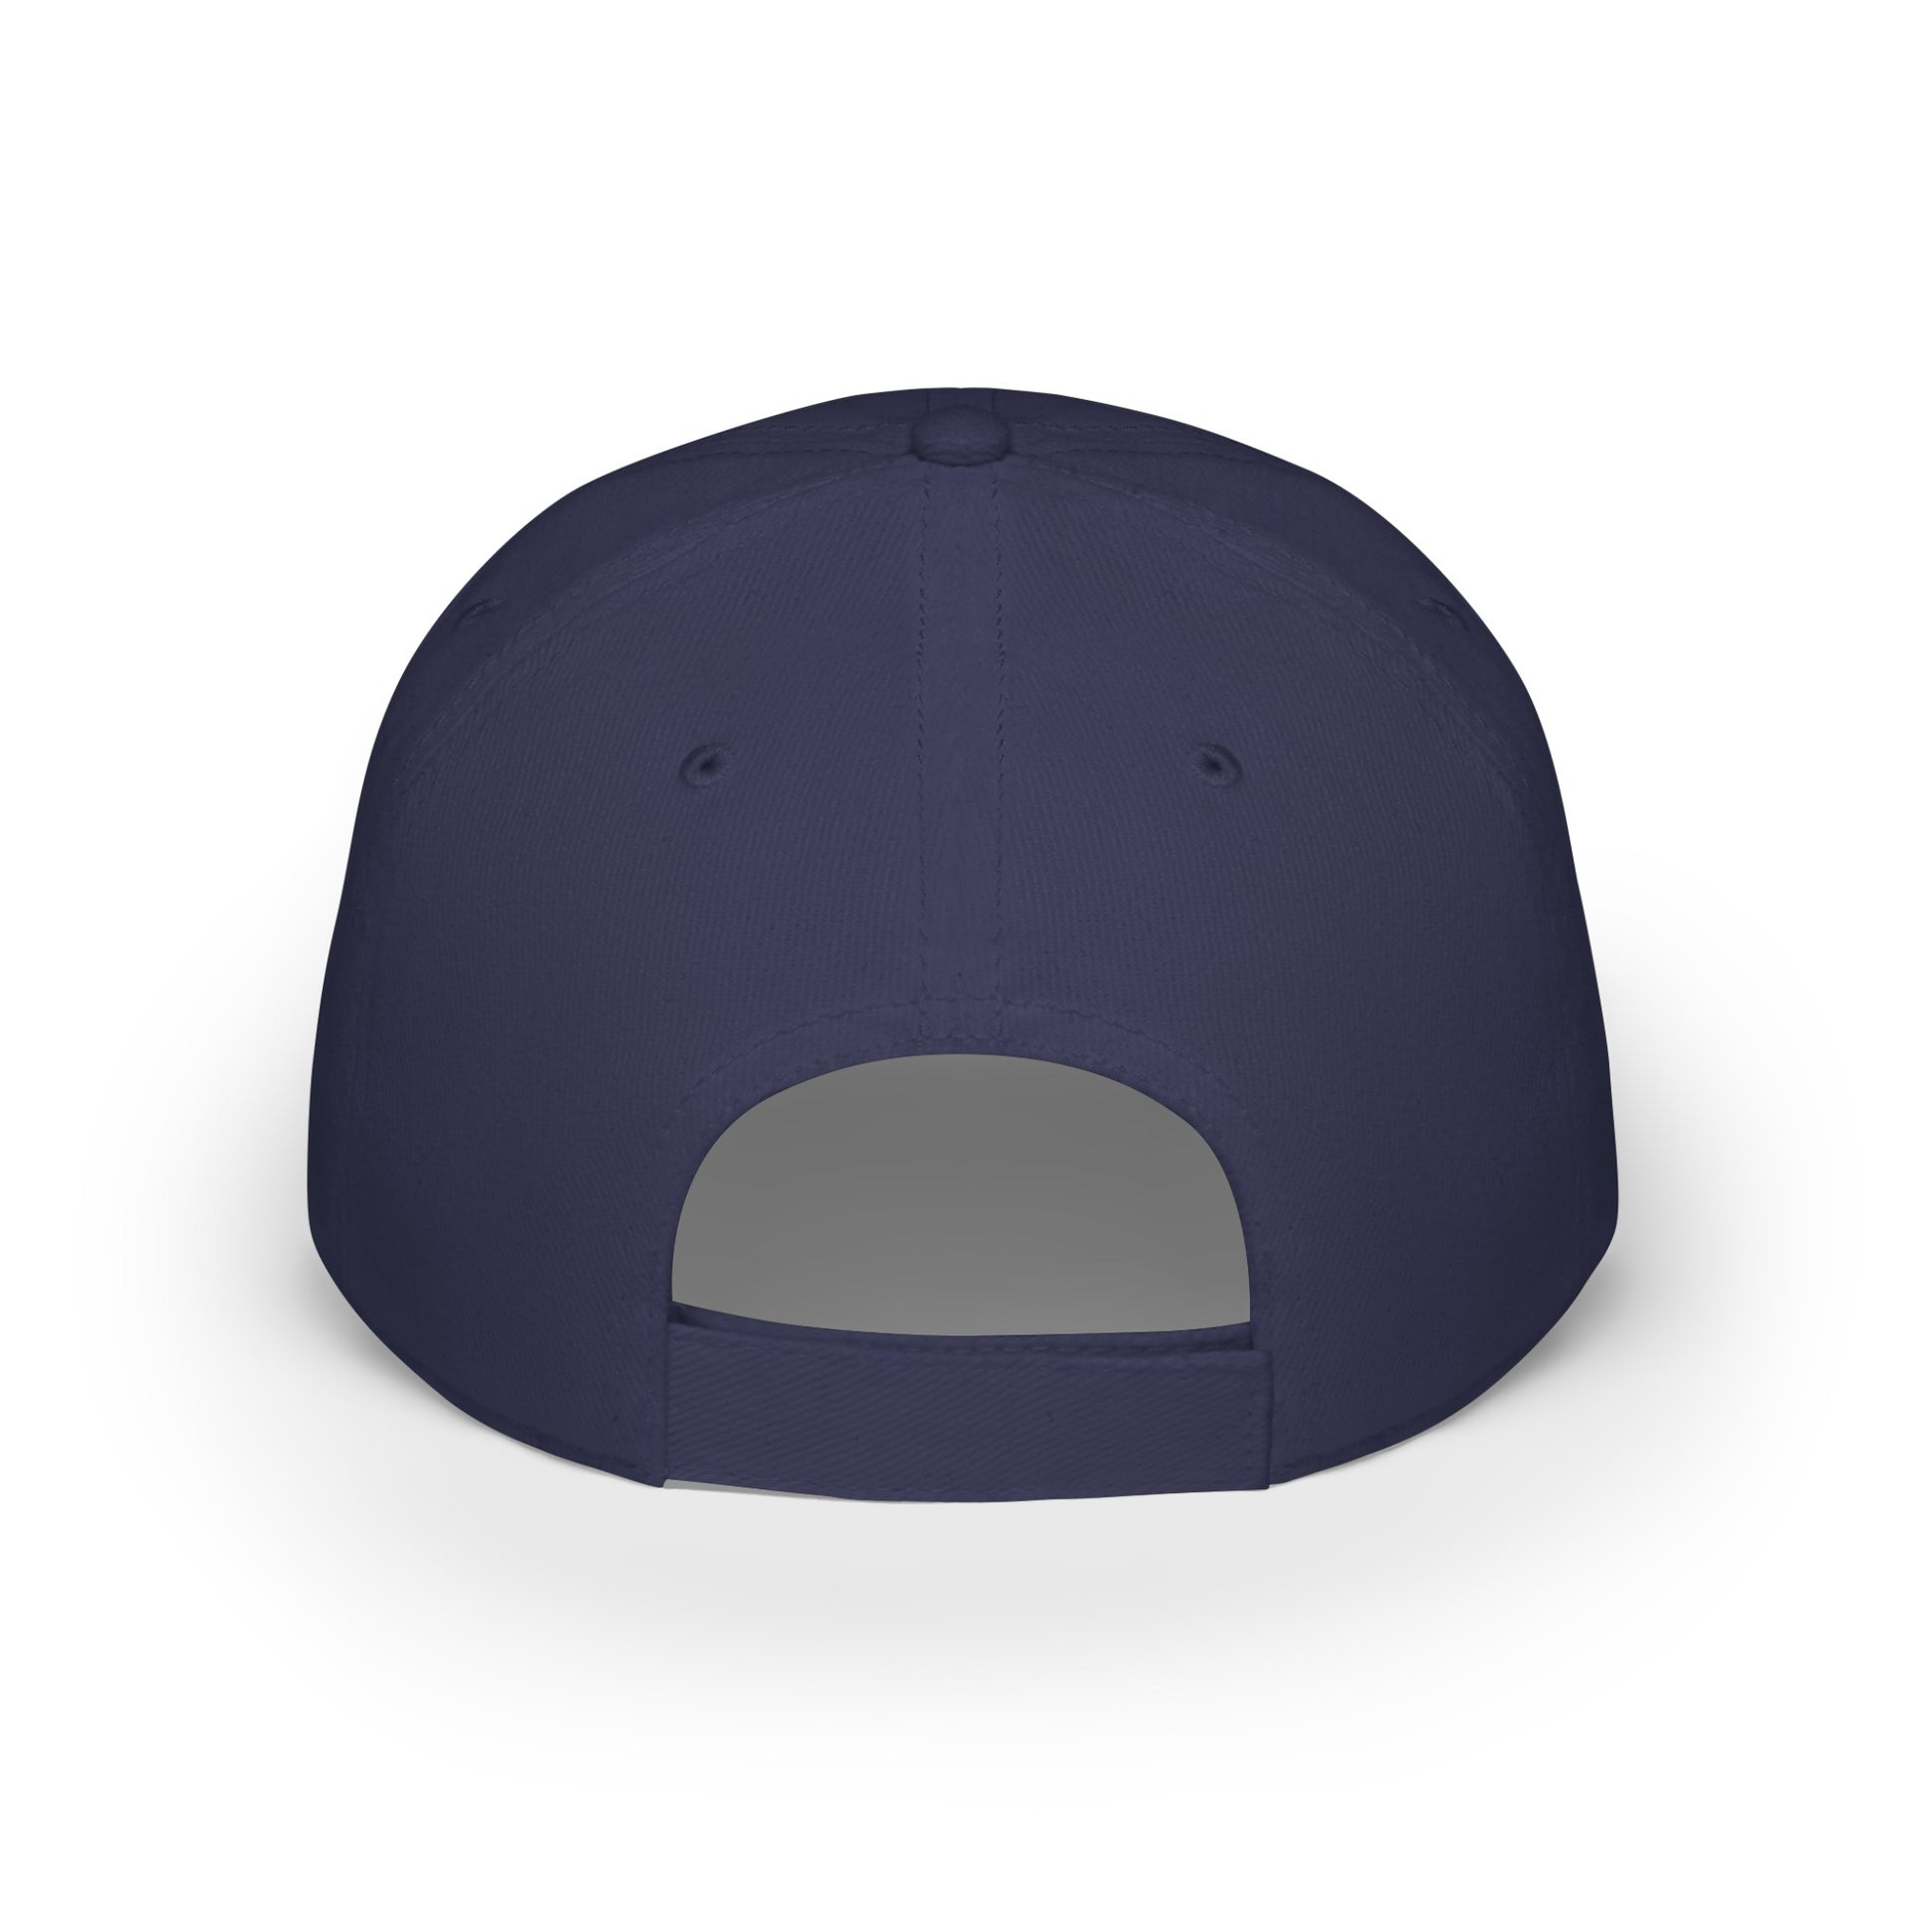 MDBTDJ#BBLUWGC - Low Profile Baseball Cap Tattooed Dj's Limited Edition, Hats, Tattooed Djs Shop